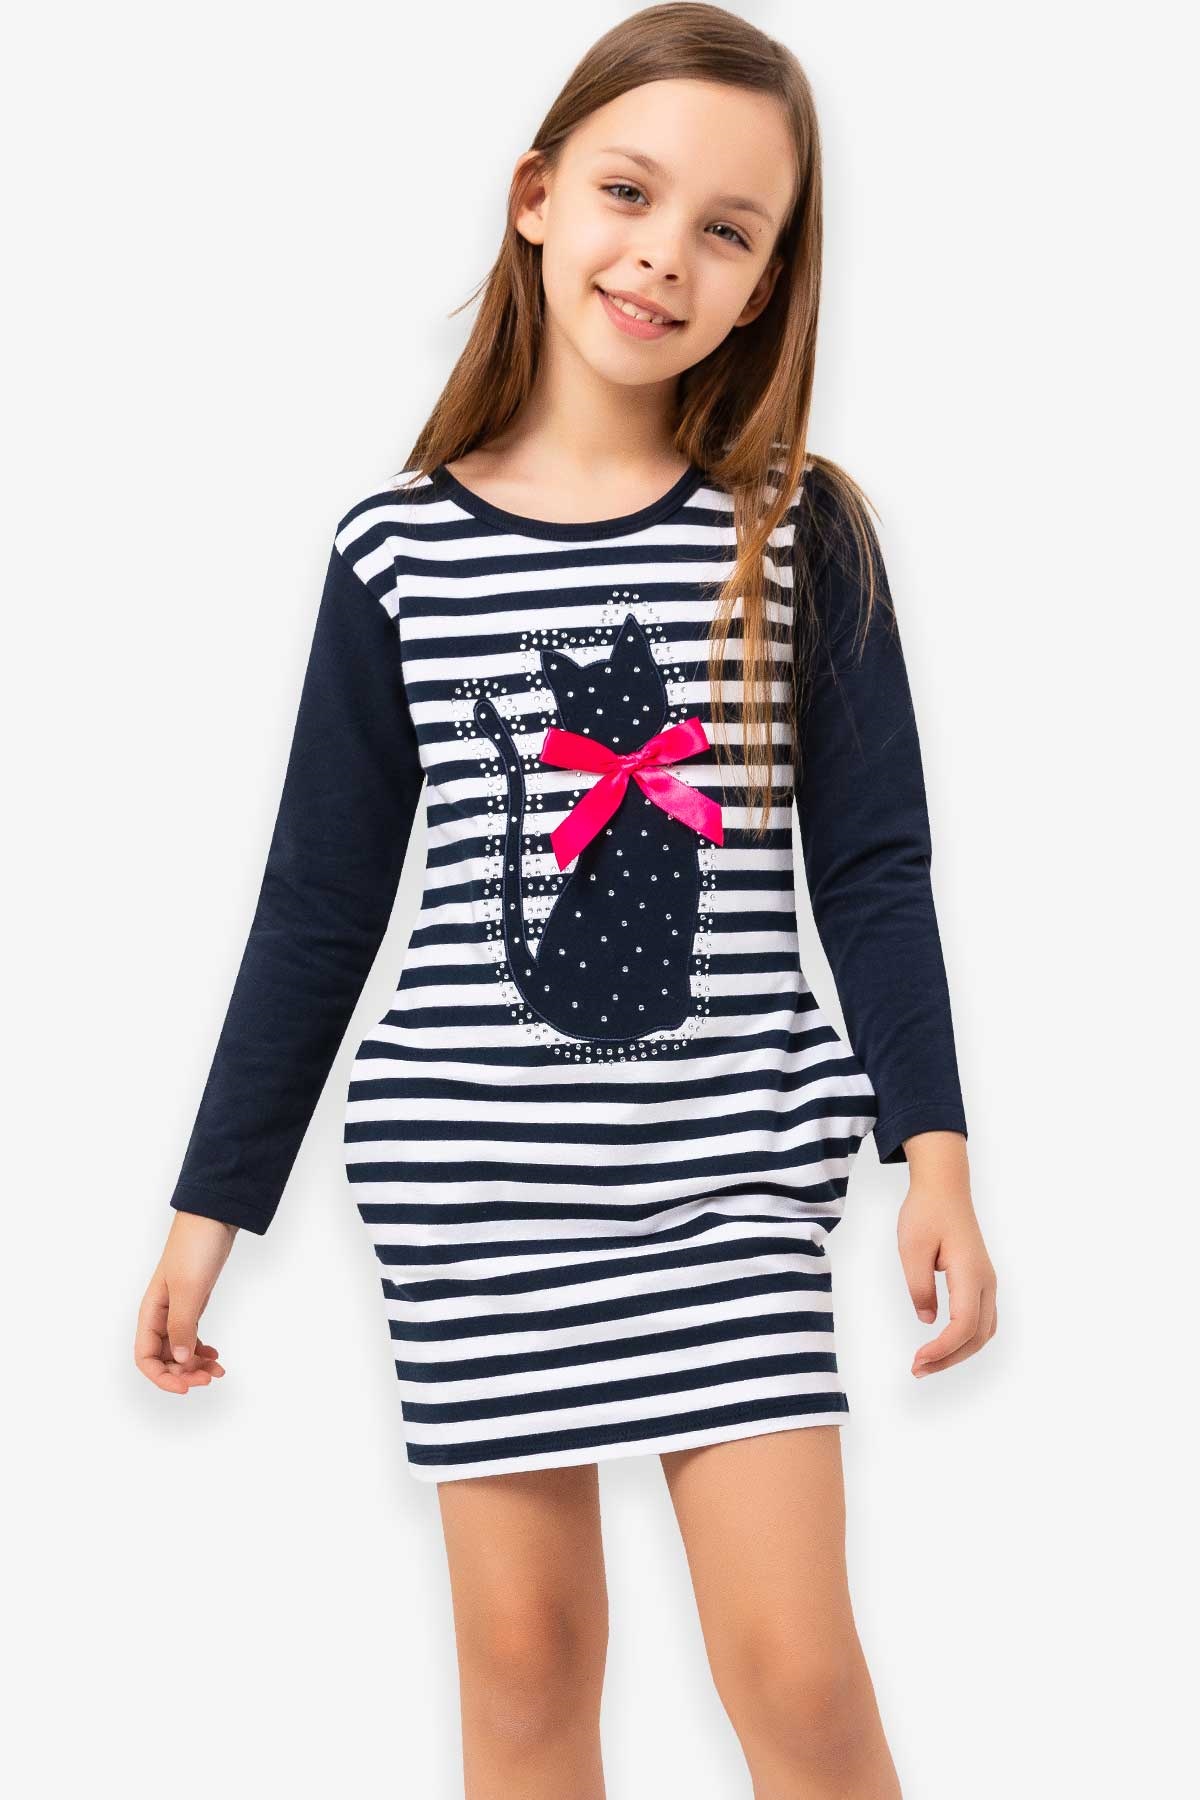 Kız Çocuk Tunik Elbise Lacivert 4-9 Yaş - Toptan Çocuk Giyim | Breeze